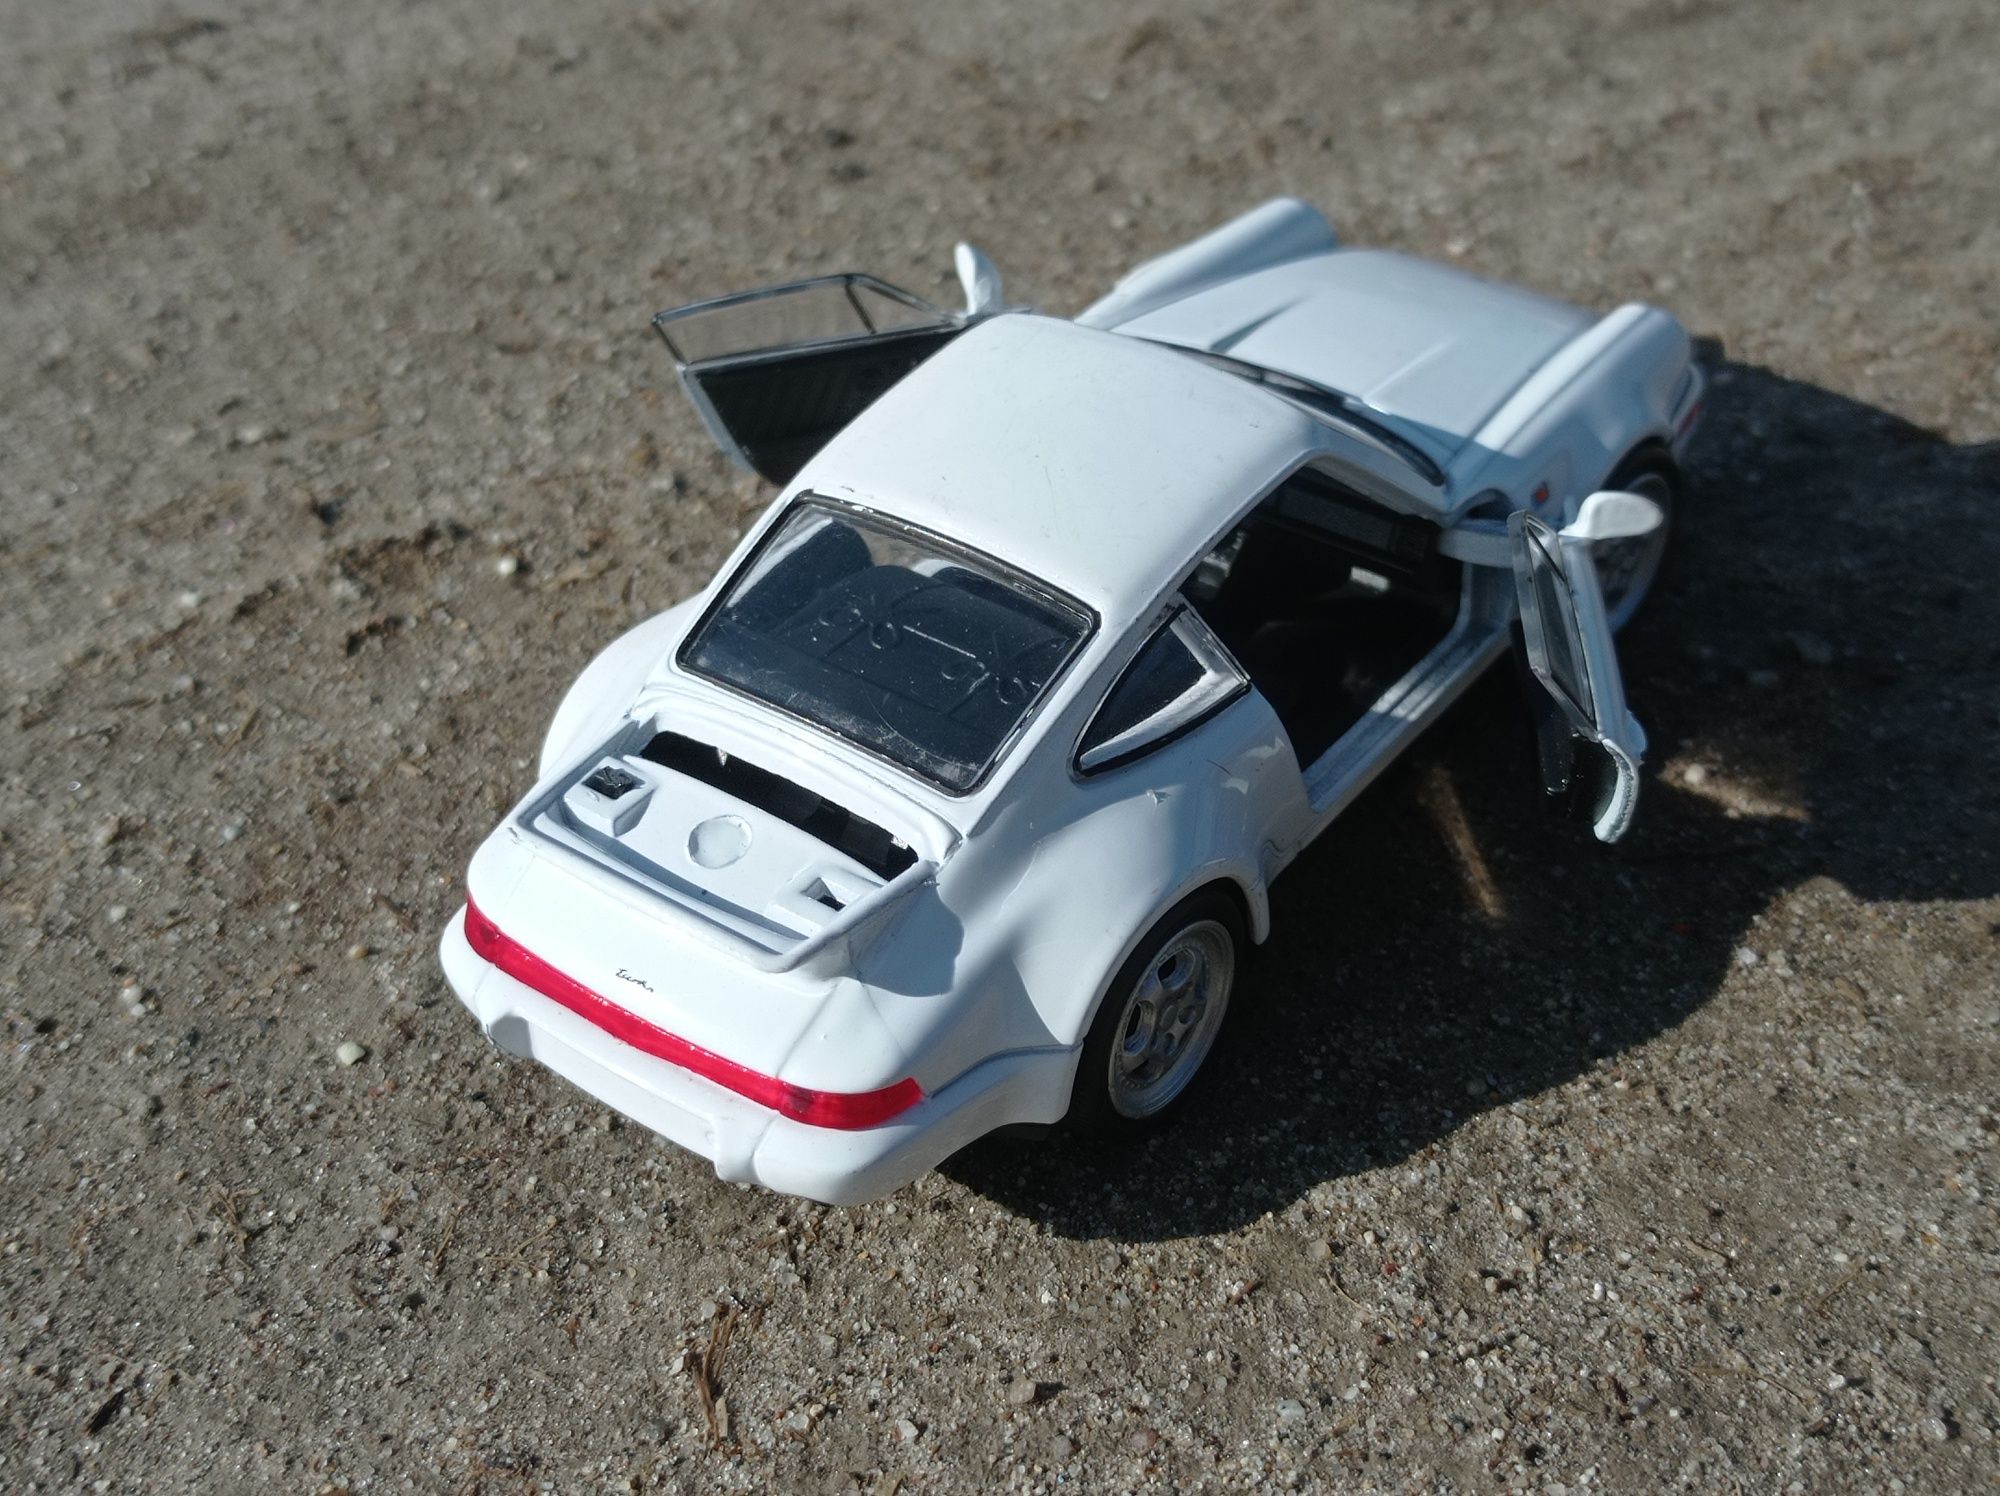 Model samochodu Porsche 911 Turbo 1:43 Welly